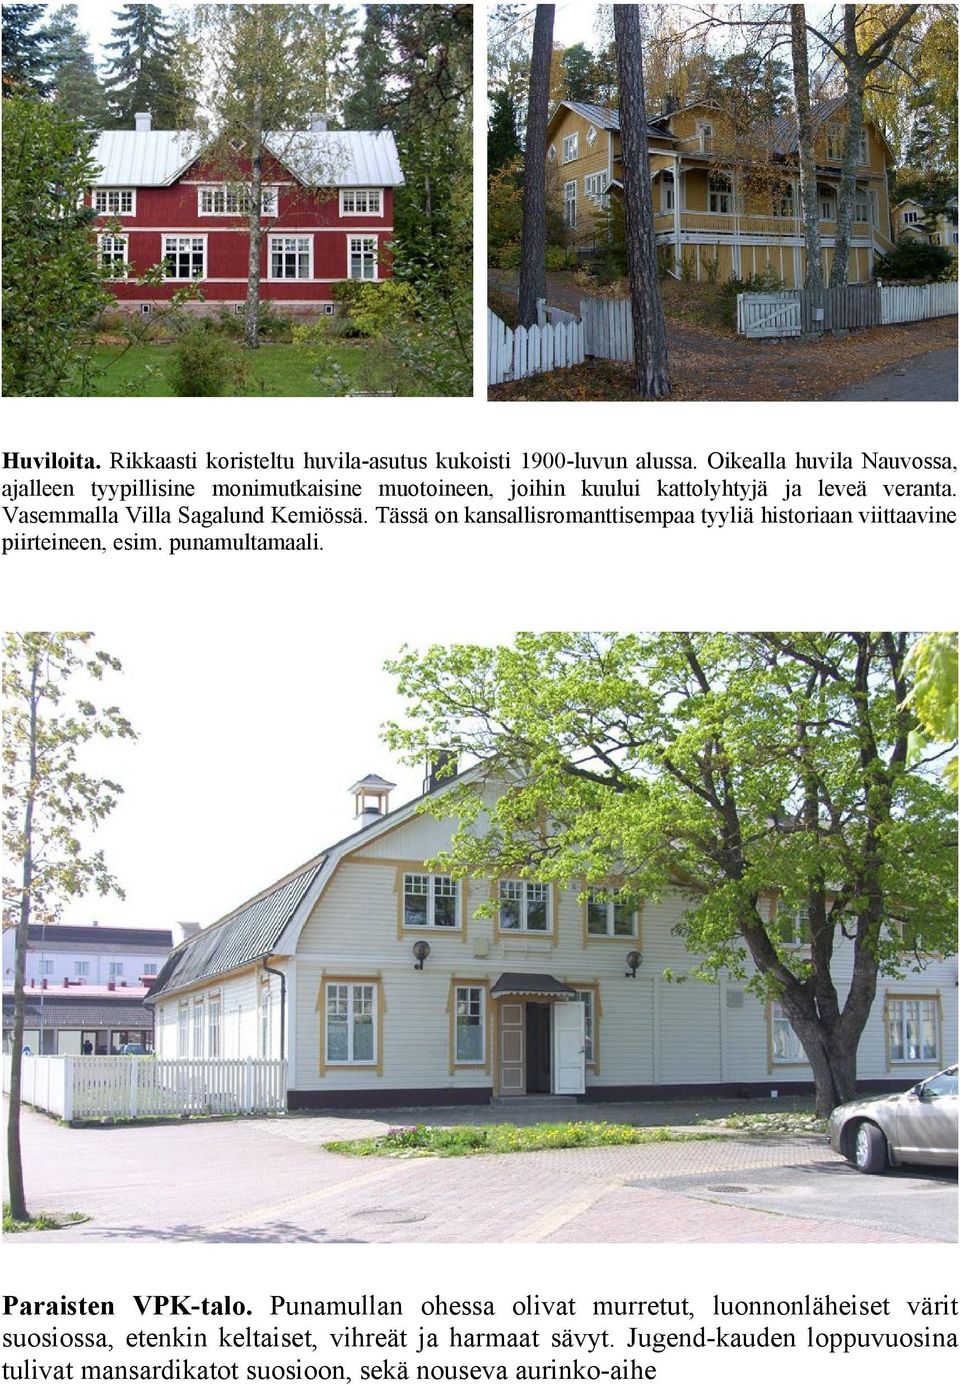 Vasemmalla Villa Sagalund Kemiössä. Tässä on kansallisromanttisempaa tyyliä historiaan viittaavine piirteineen, esim. punamultamaali.